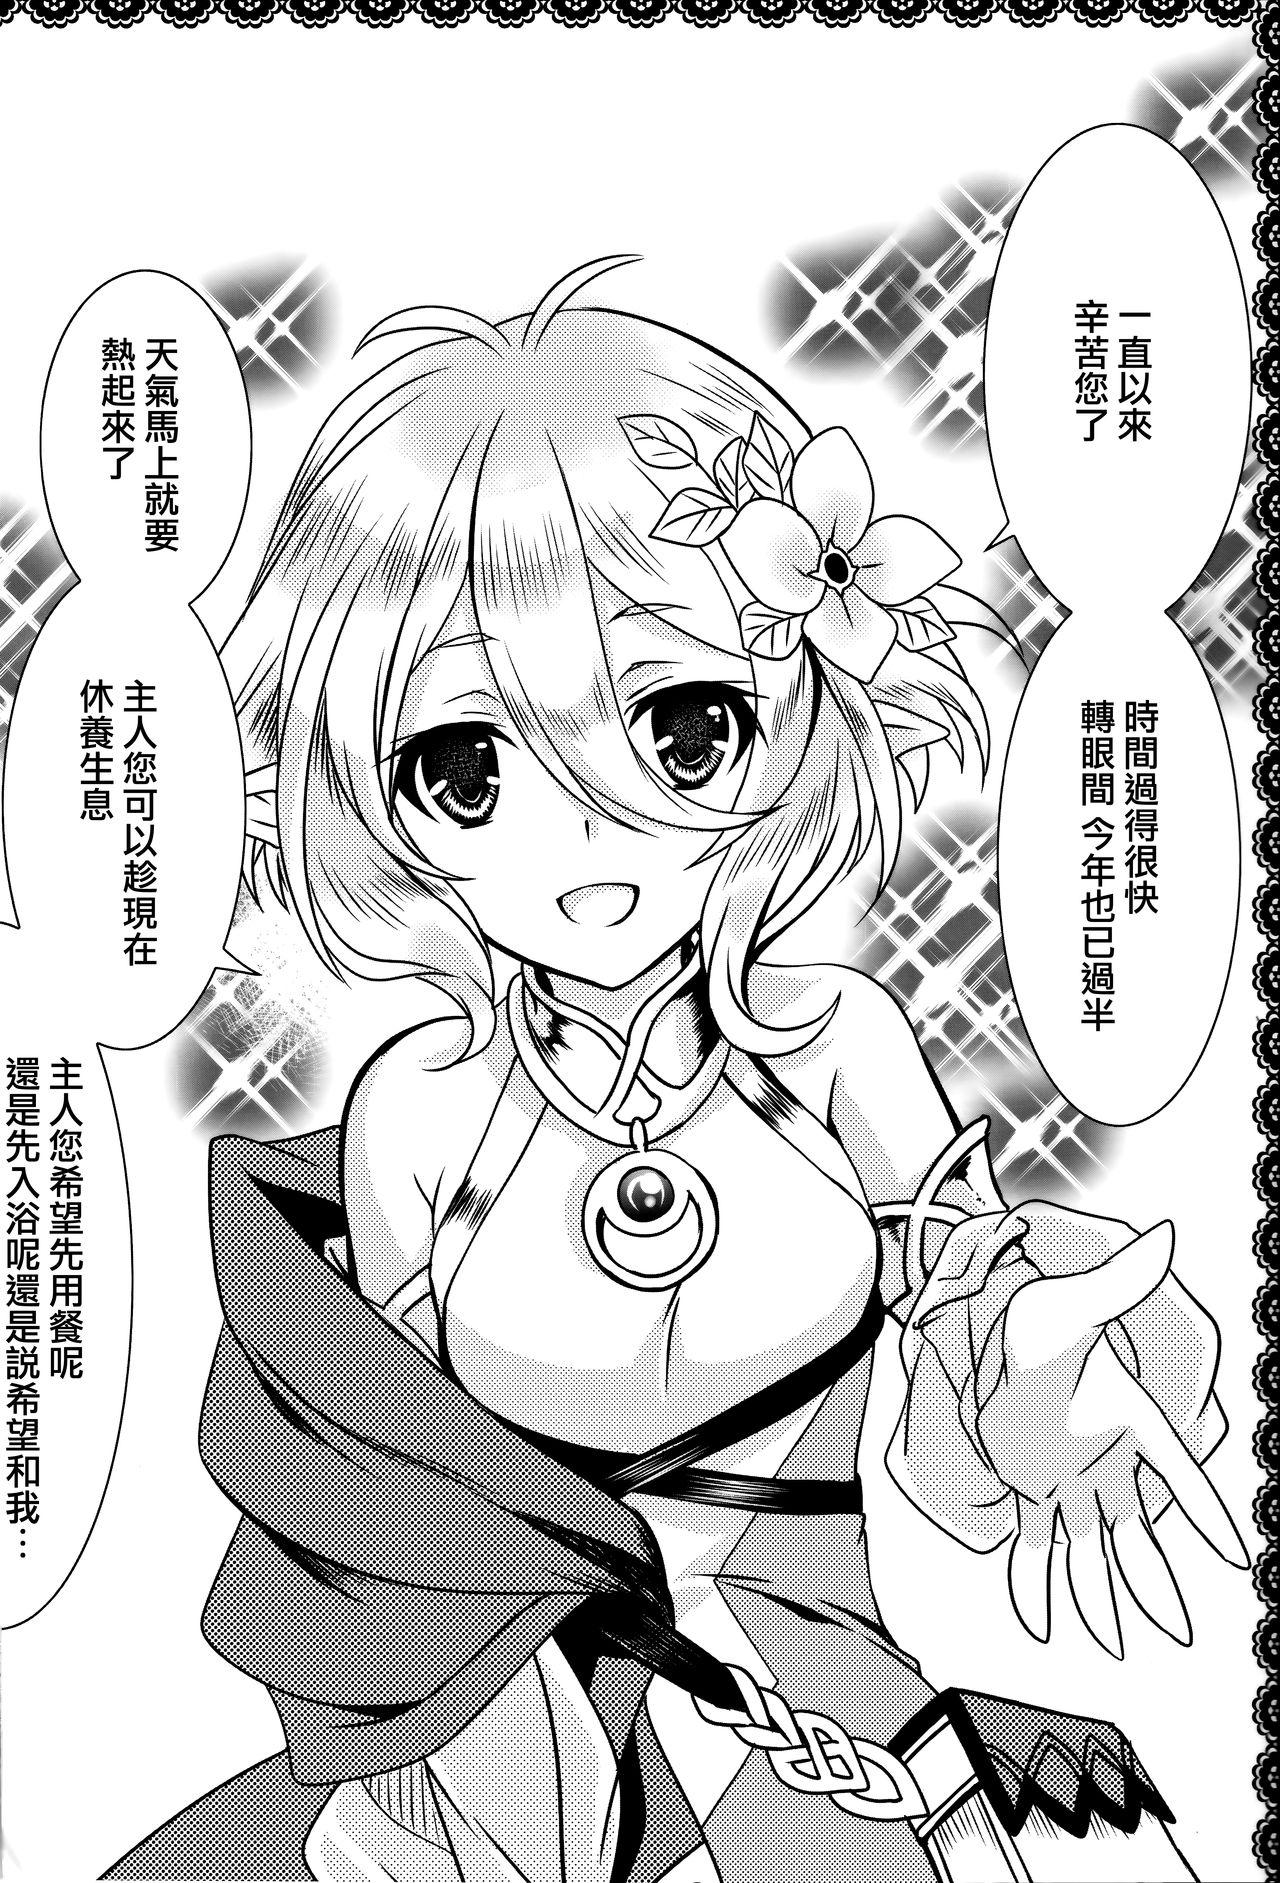 Camshow Aruji-sama ni Naisho no Memory Piece - Princess connect Crazy - Page 3